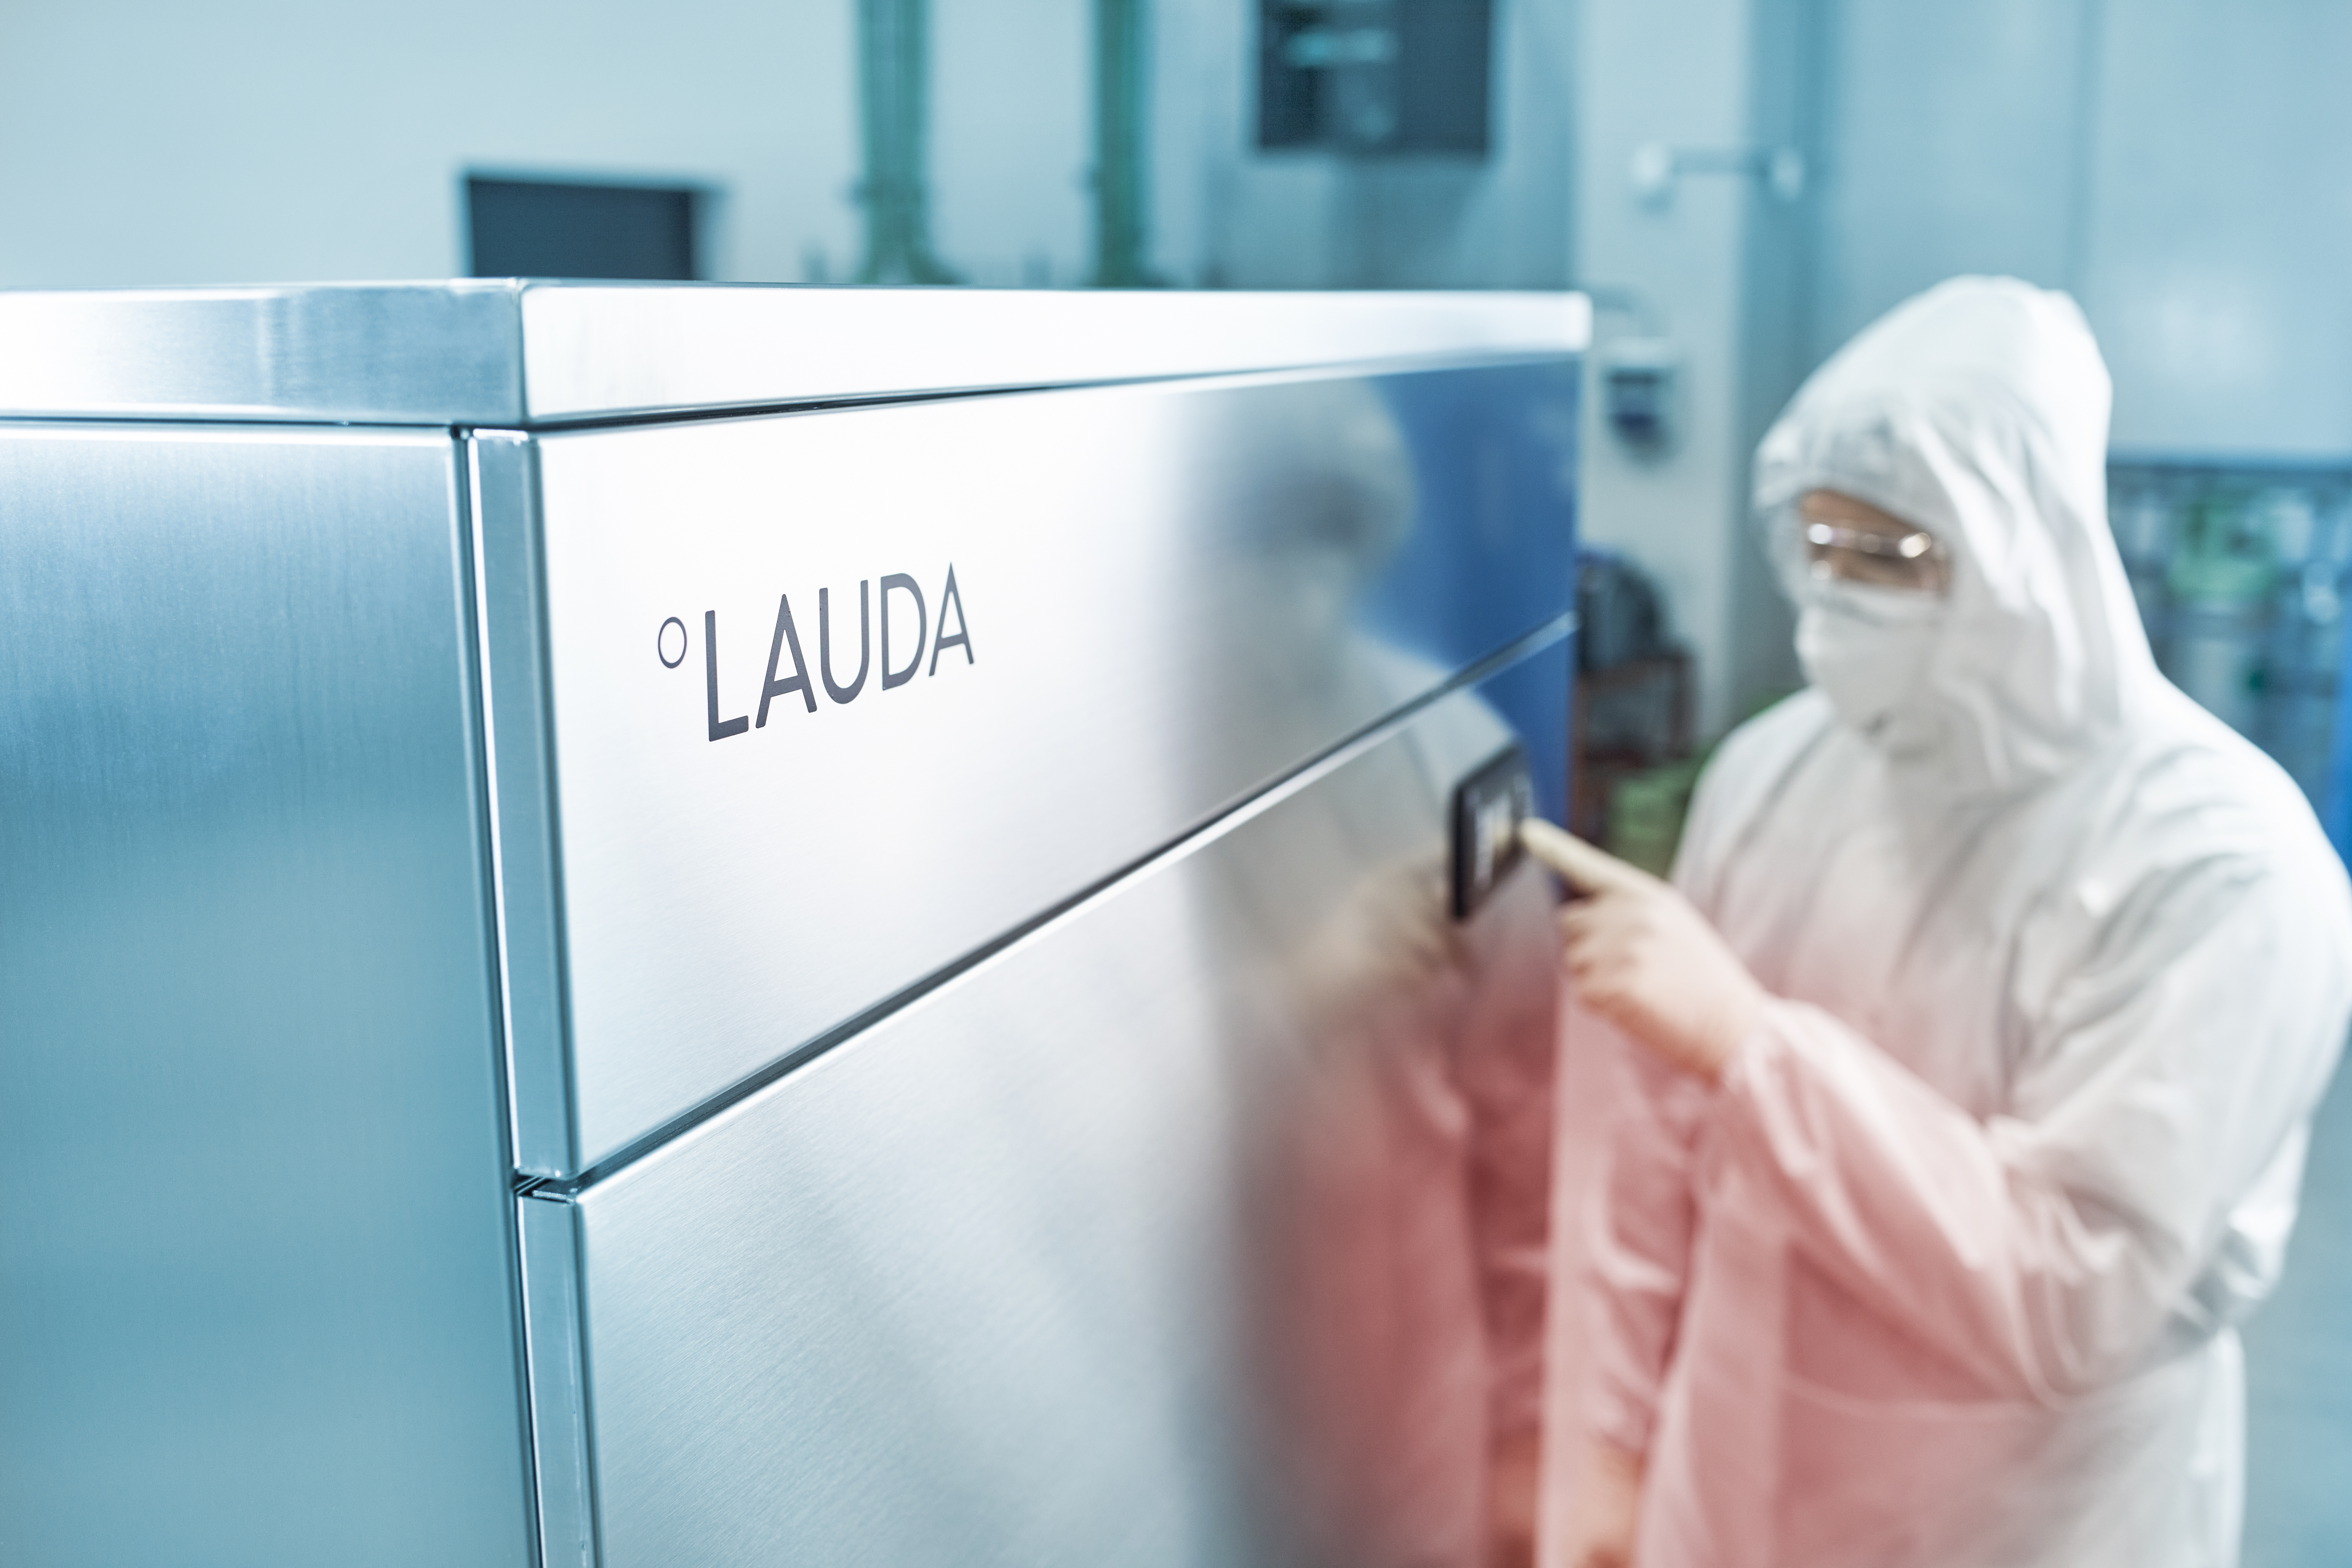 Neue Prozessthermostate für anspruchsvolle Anwendungen in der Biotechnologie und Pharmaindustrie - LAUDA stellt neue Ultratemp Gerätelinie vor